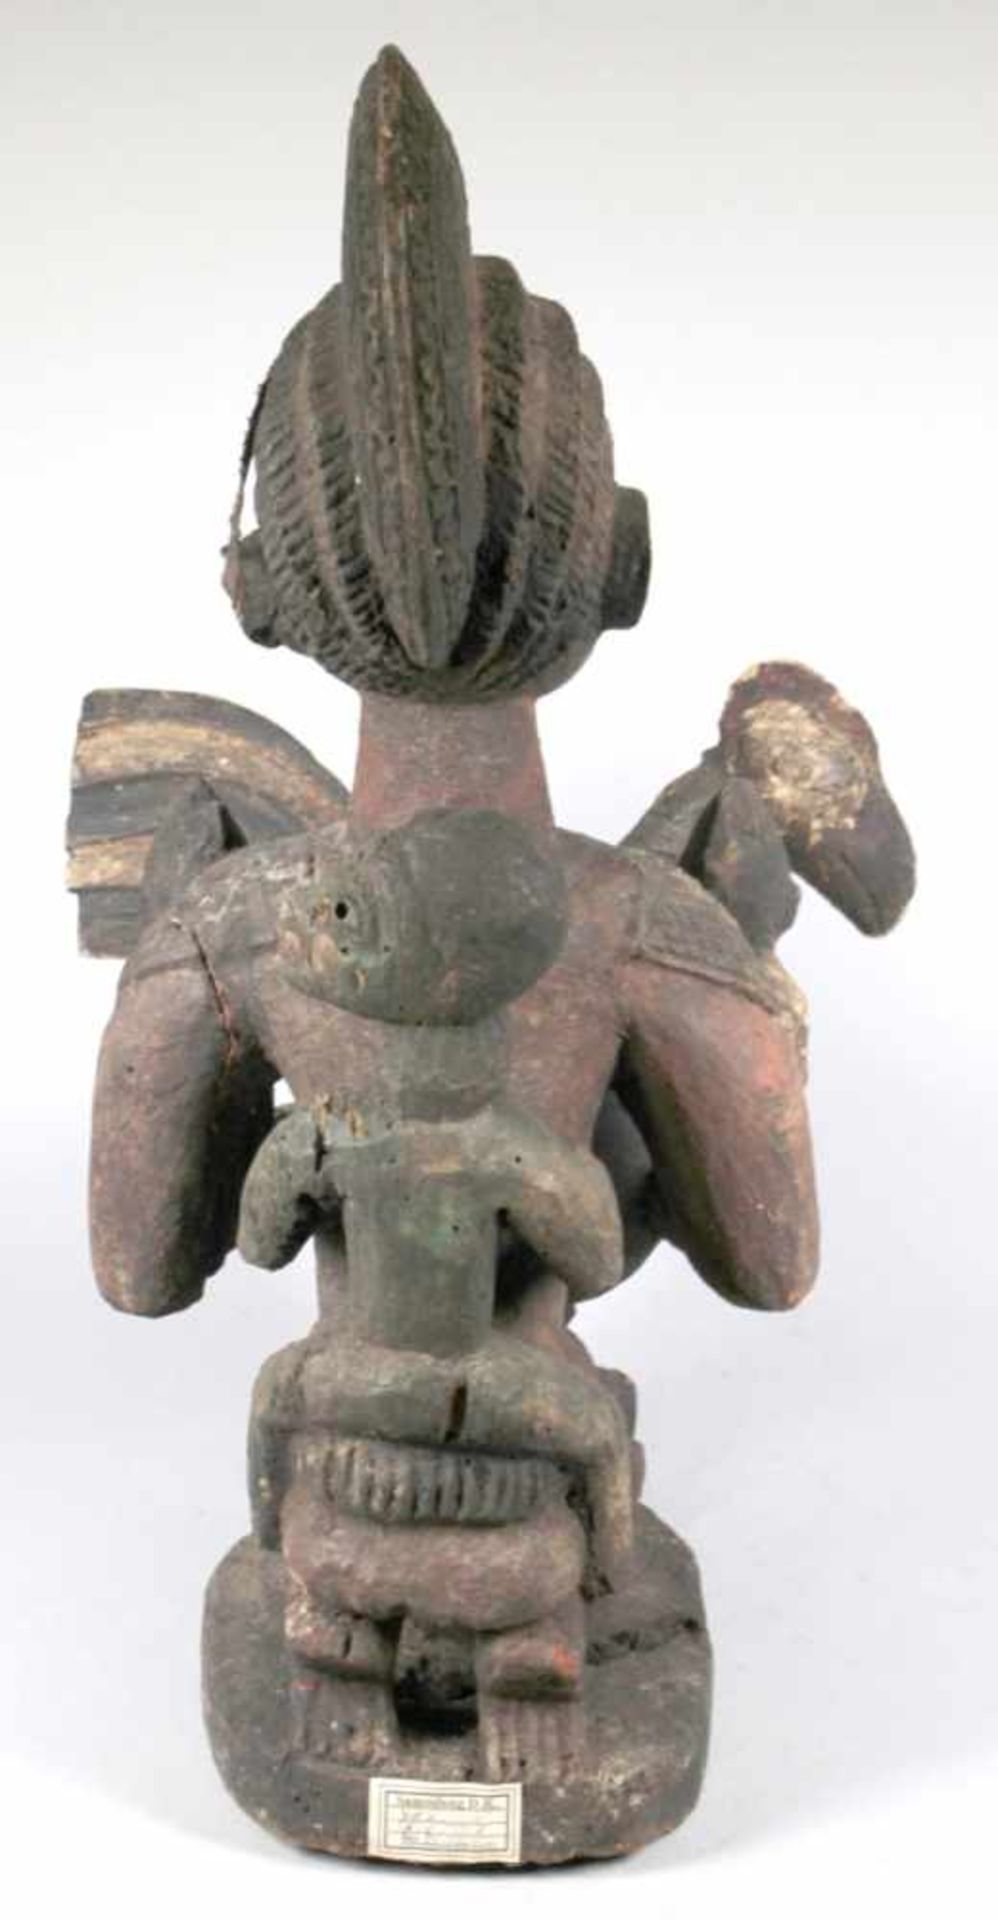 Mutter-Figur bzw. Schalenträgerin, Yoruba, Nigeria, auf Flachplinthe kniende, weibliche< - Bild 3 aus 5